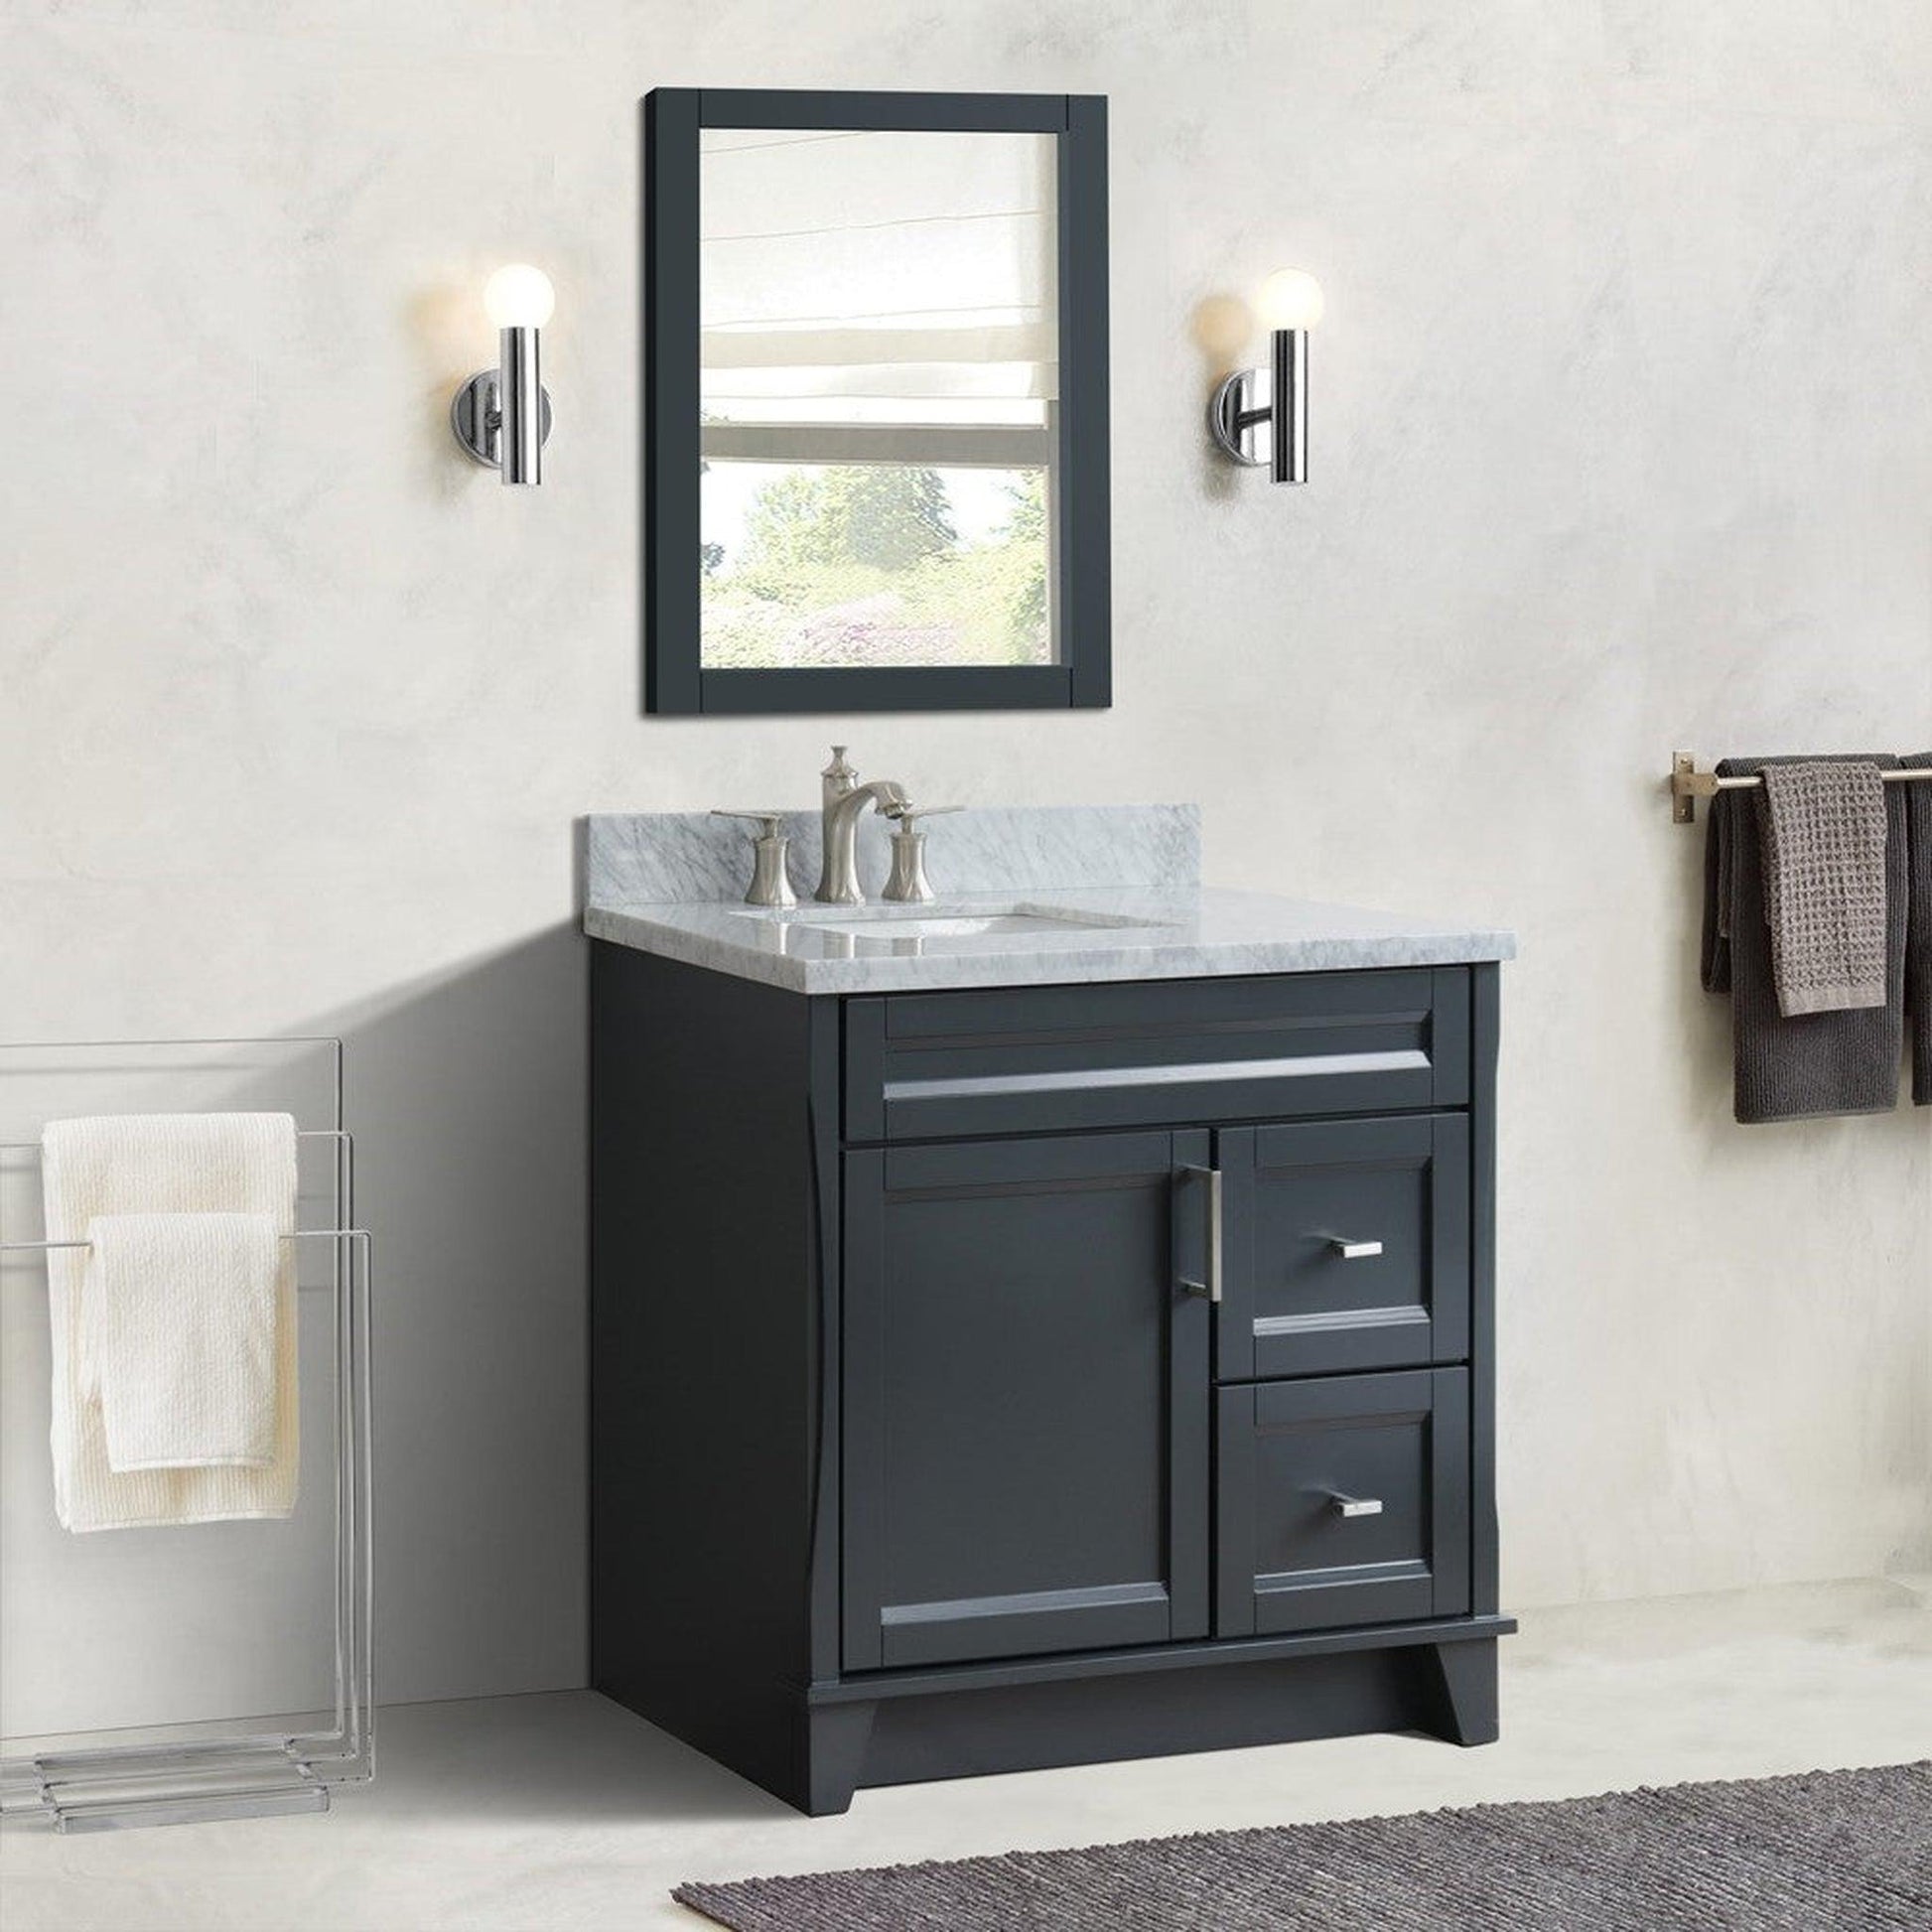 Bellaterra Home Terni 37" 1-Door 2-Drawer Dark Gray Freestanding Vanity Set With Ceramic Left Offset Undermount Rectangular Sink and White Carrara Marble Top, and Left Door Base